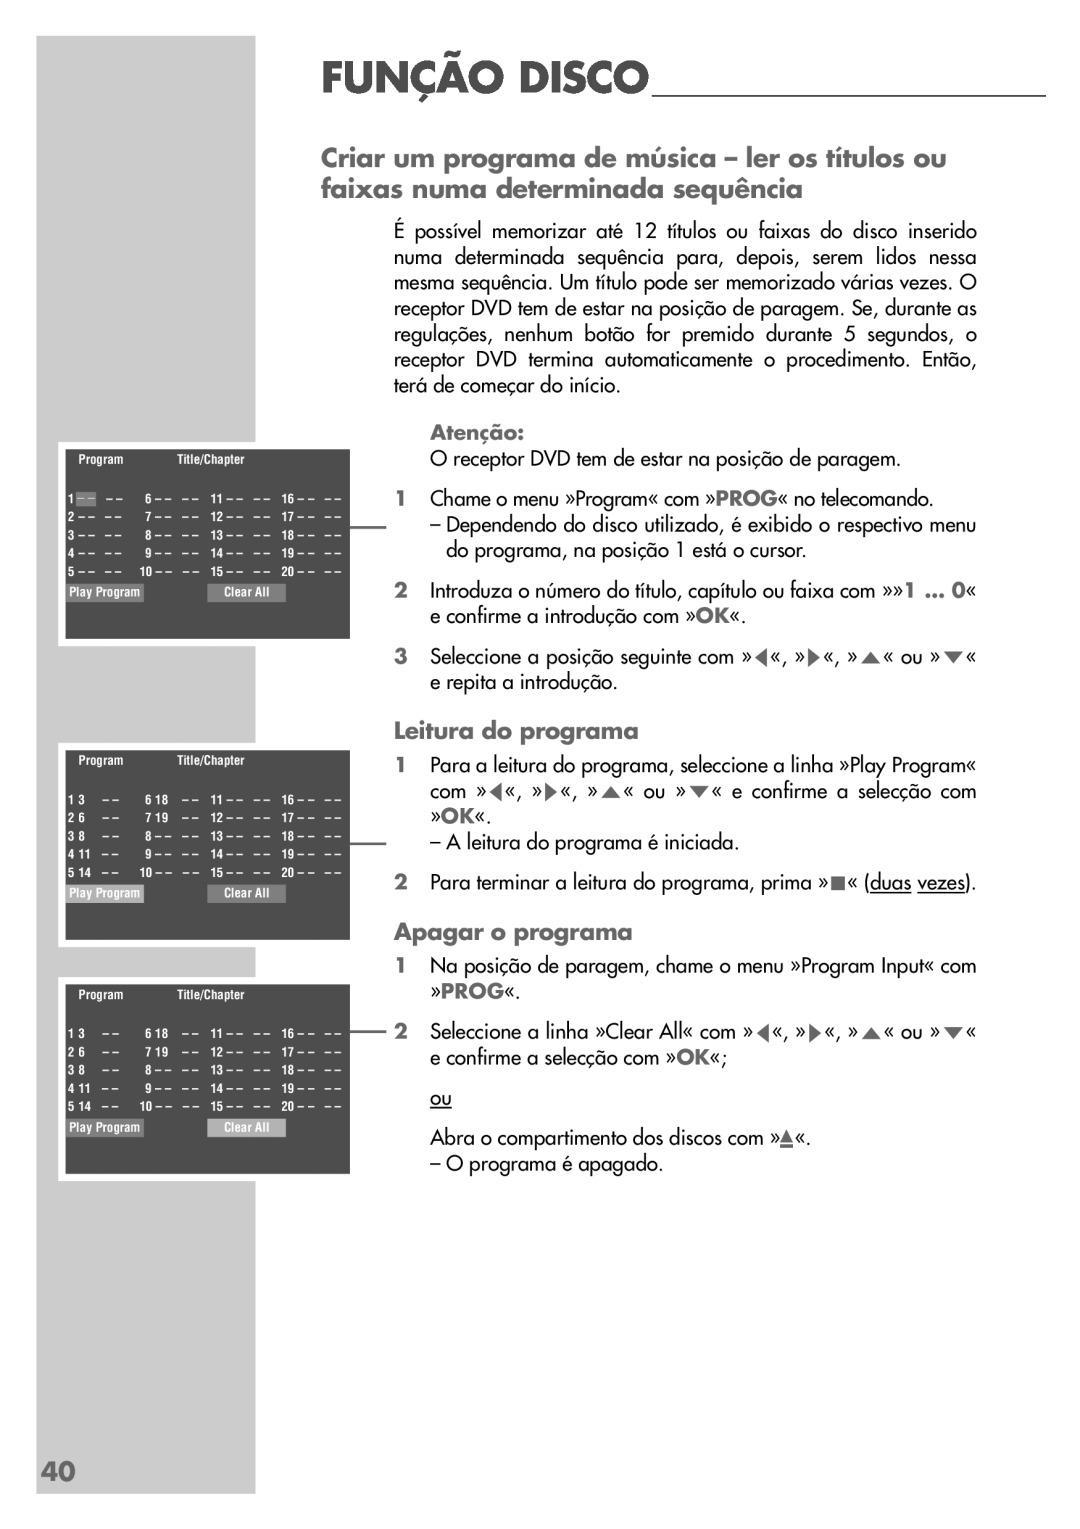 Grundig DR 5400 DD manual Leitura do programa, Apagar o programa, Função Disco 